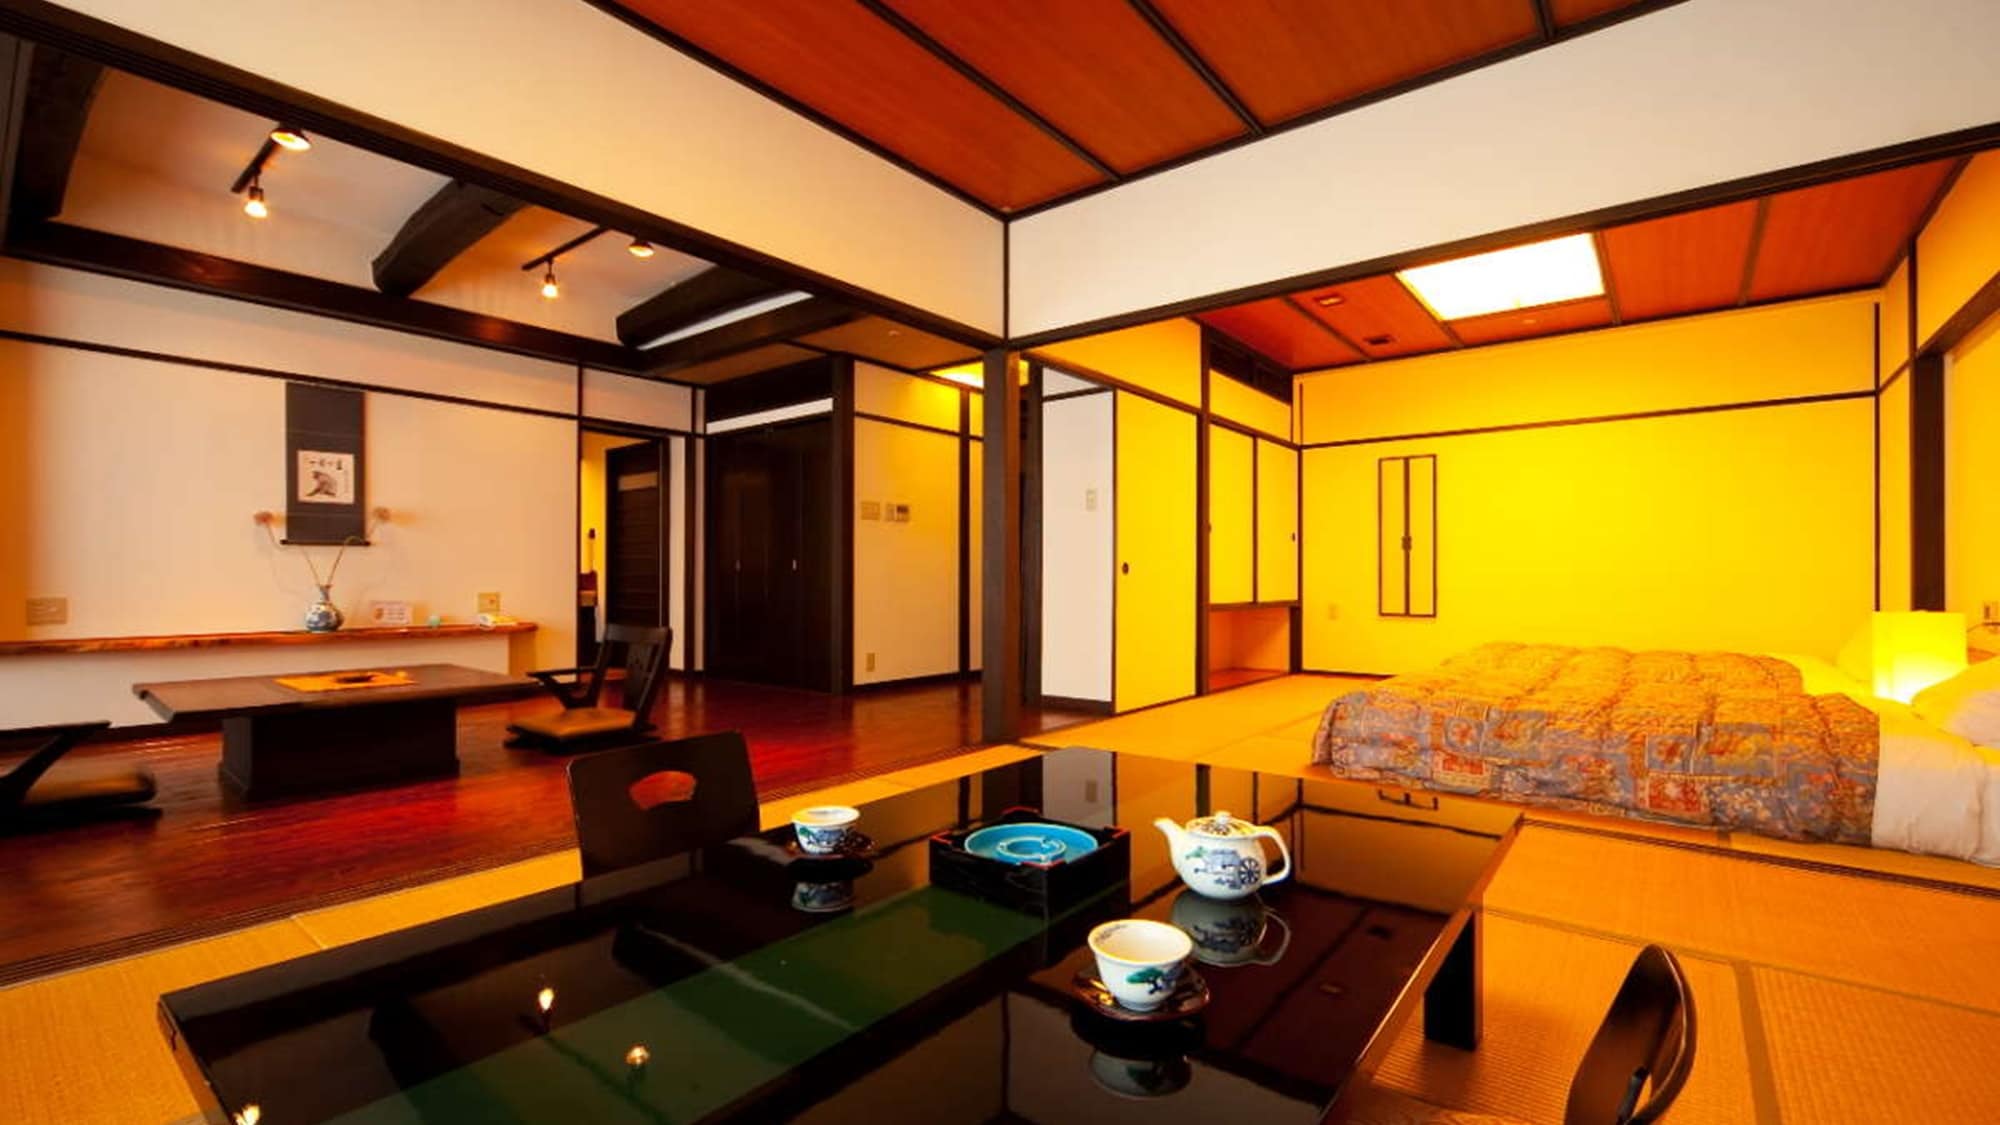 Kamar bergaya Jepang-Barat dengan bak mandi cemara "Kikyo" / 2 kamar dengan ruang tamu dan kamar bergaya Jepang sekitar 20